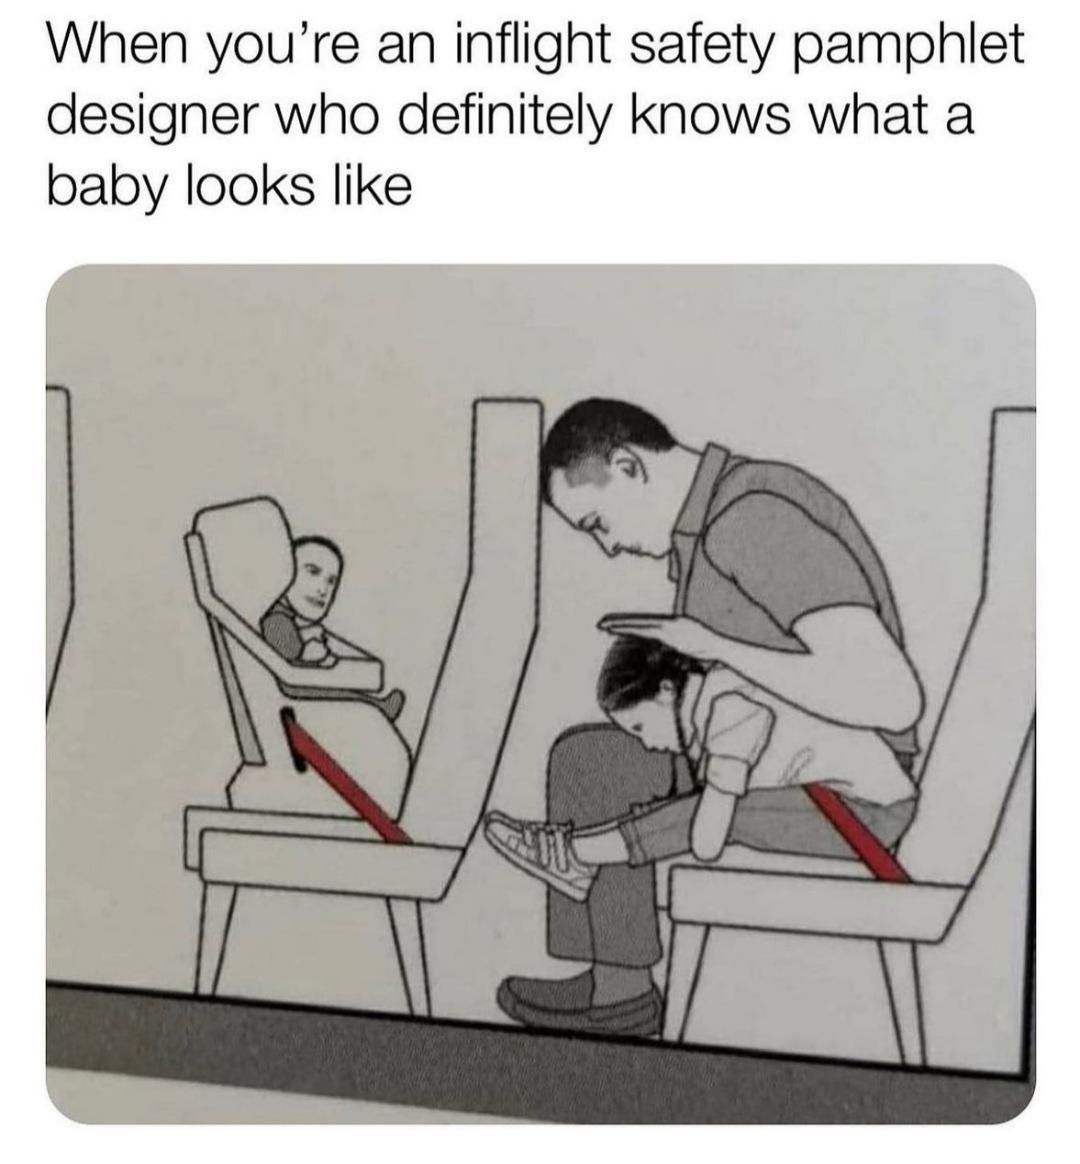 Yep that's definitely a baby